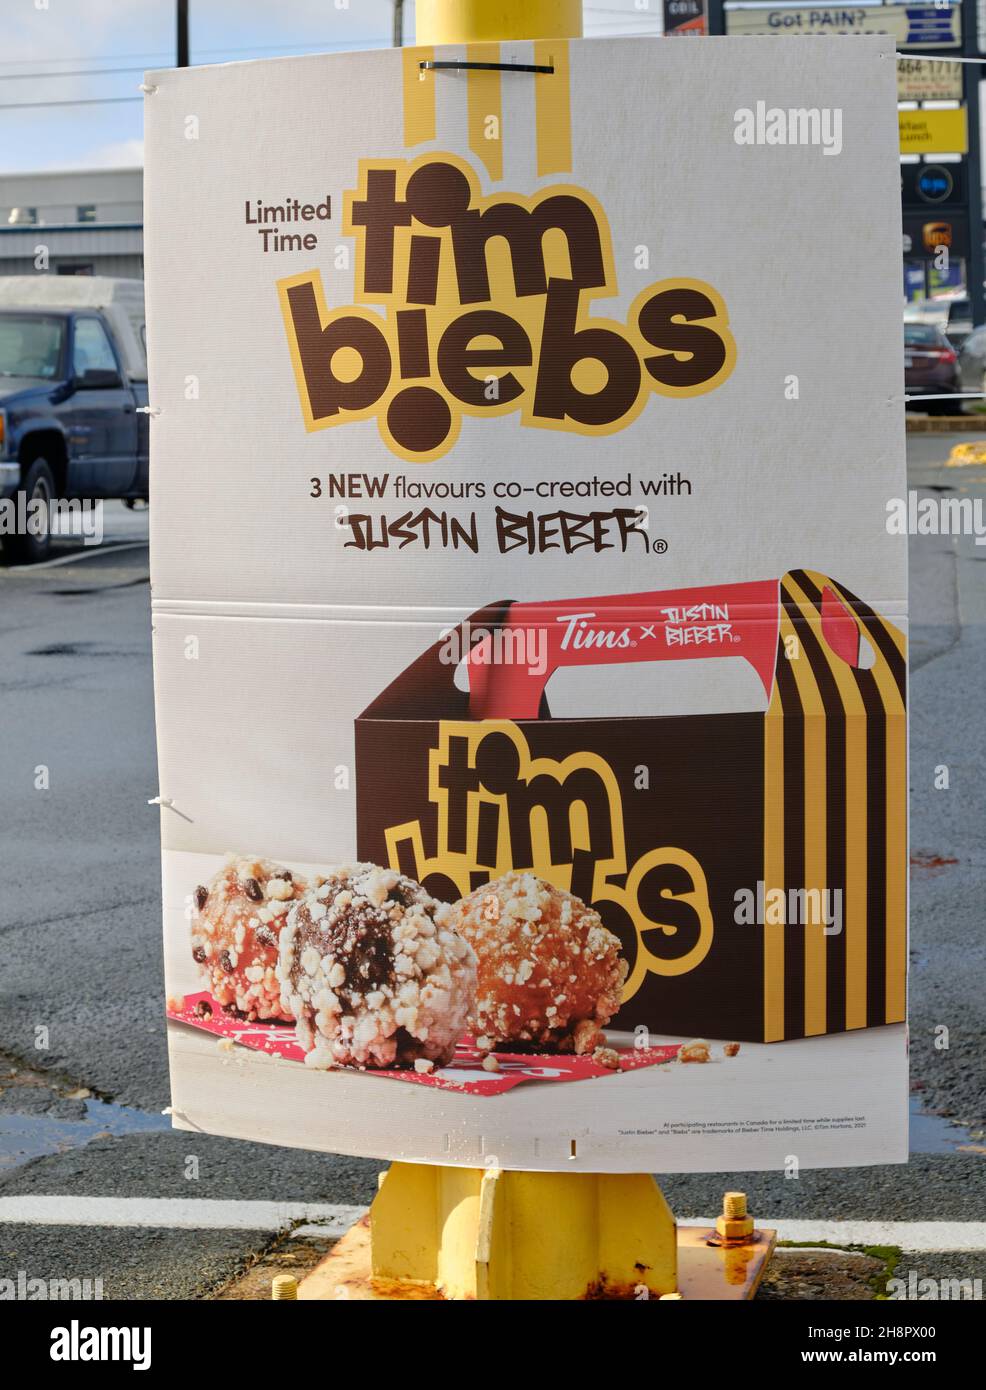 Panneau annonçant des donuts Tim Biebs créés par Justin Bieber au restaurant Tim Hortons.Halifax, Canada.1er décembre 2021. Banque D'Images